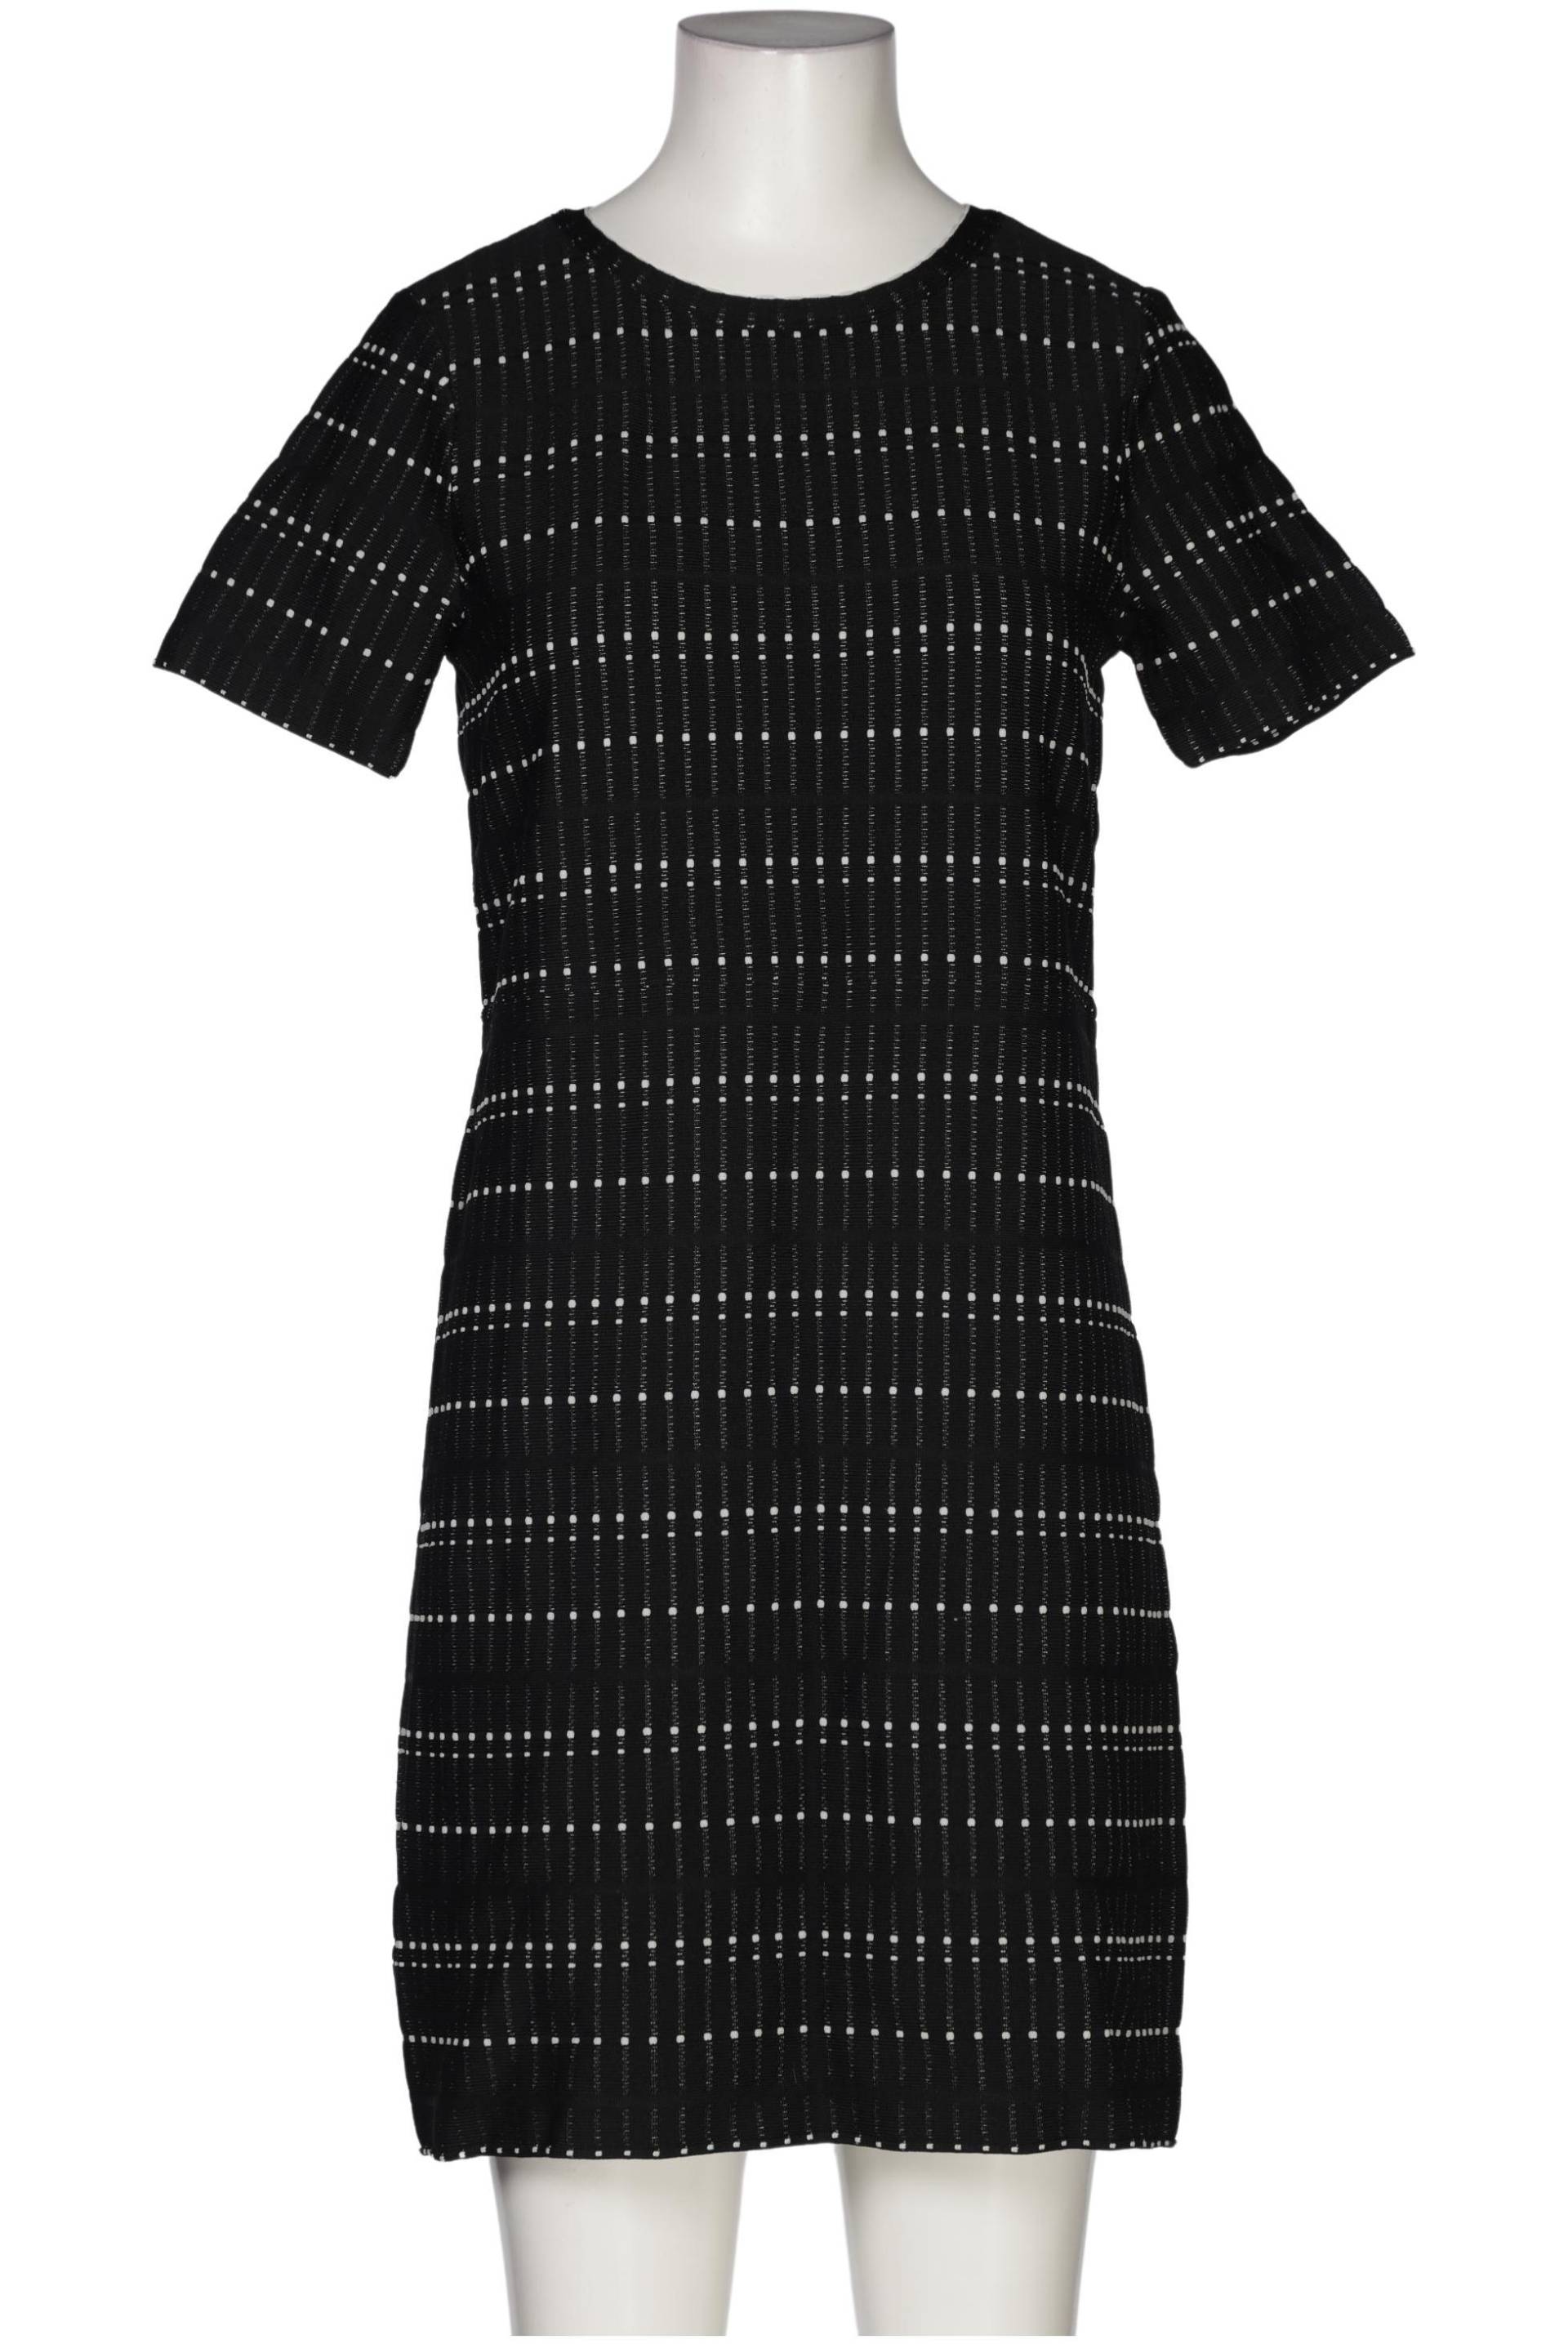 Burton Damen Kleid, schwarz, Gr. 36 von Burton